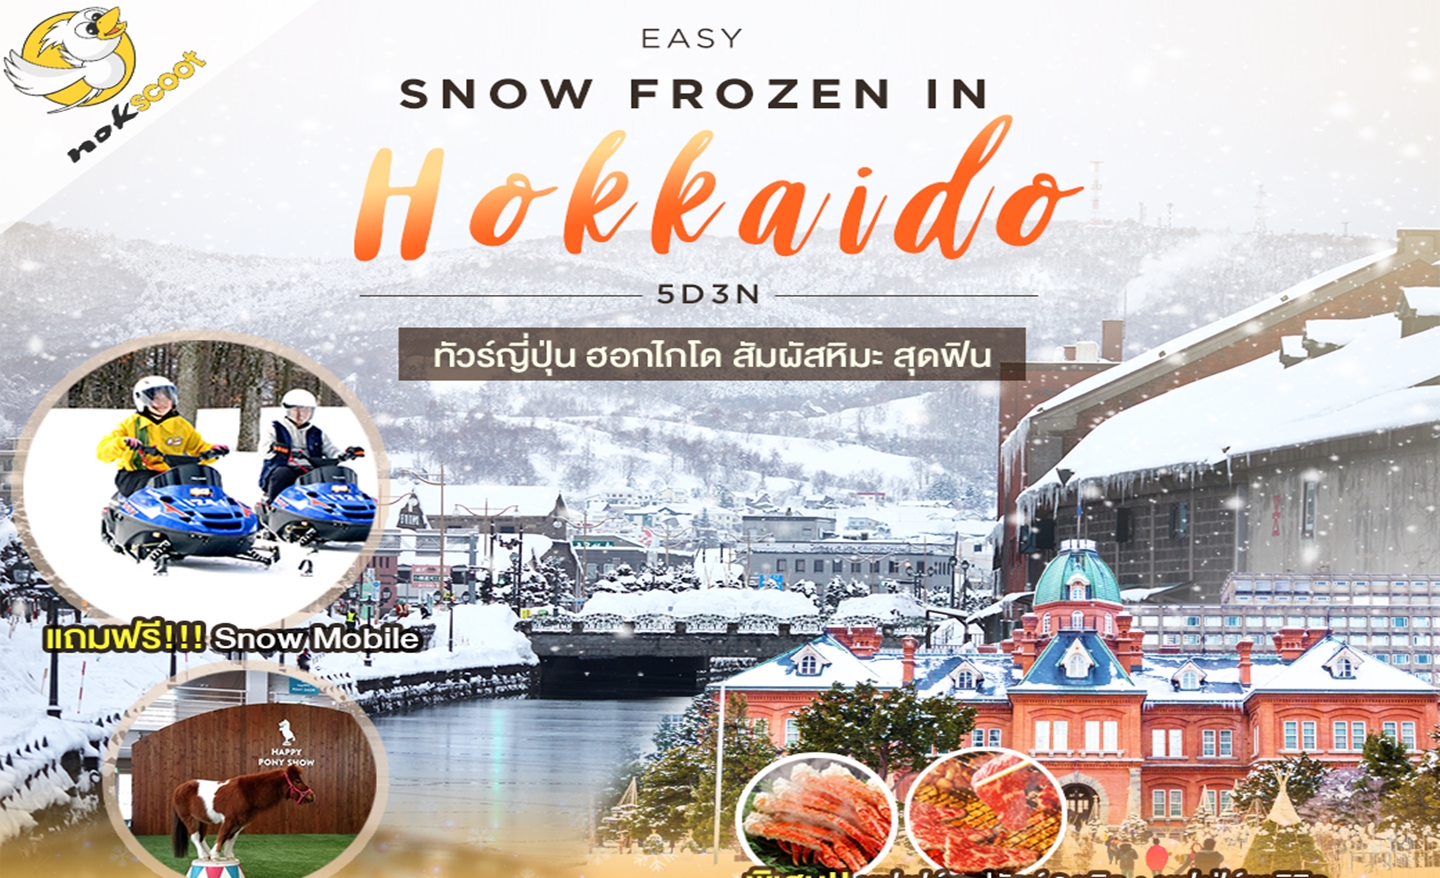 ทัวร์ญี่ปุ่น Easy Snow Frozen In Hokkaido 5D3N มีฟรีเดย์ (ม.ค.-มี.ค.63)